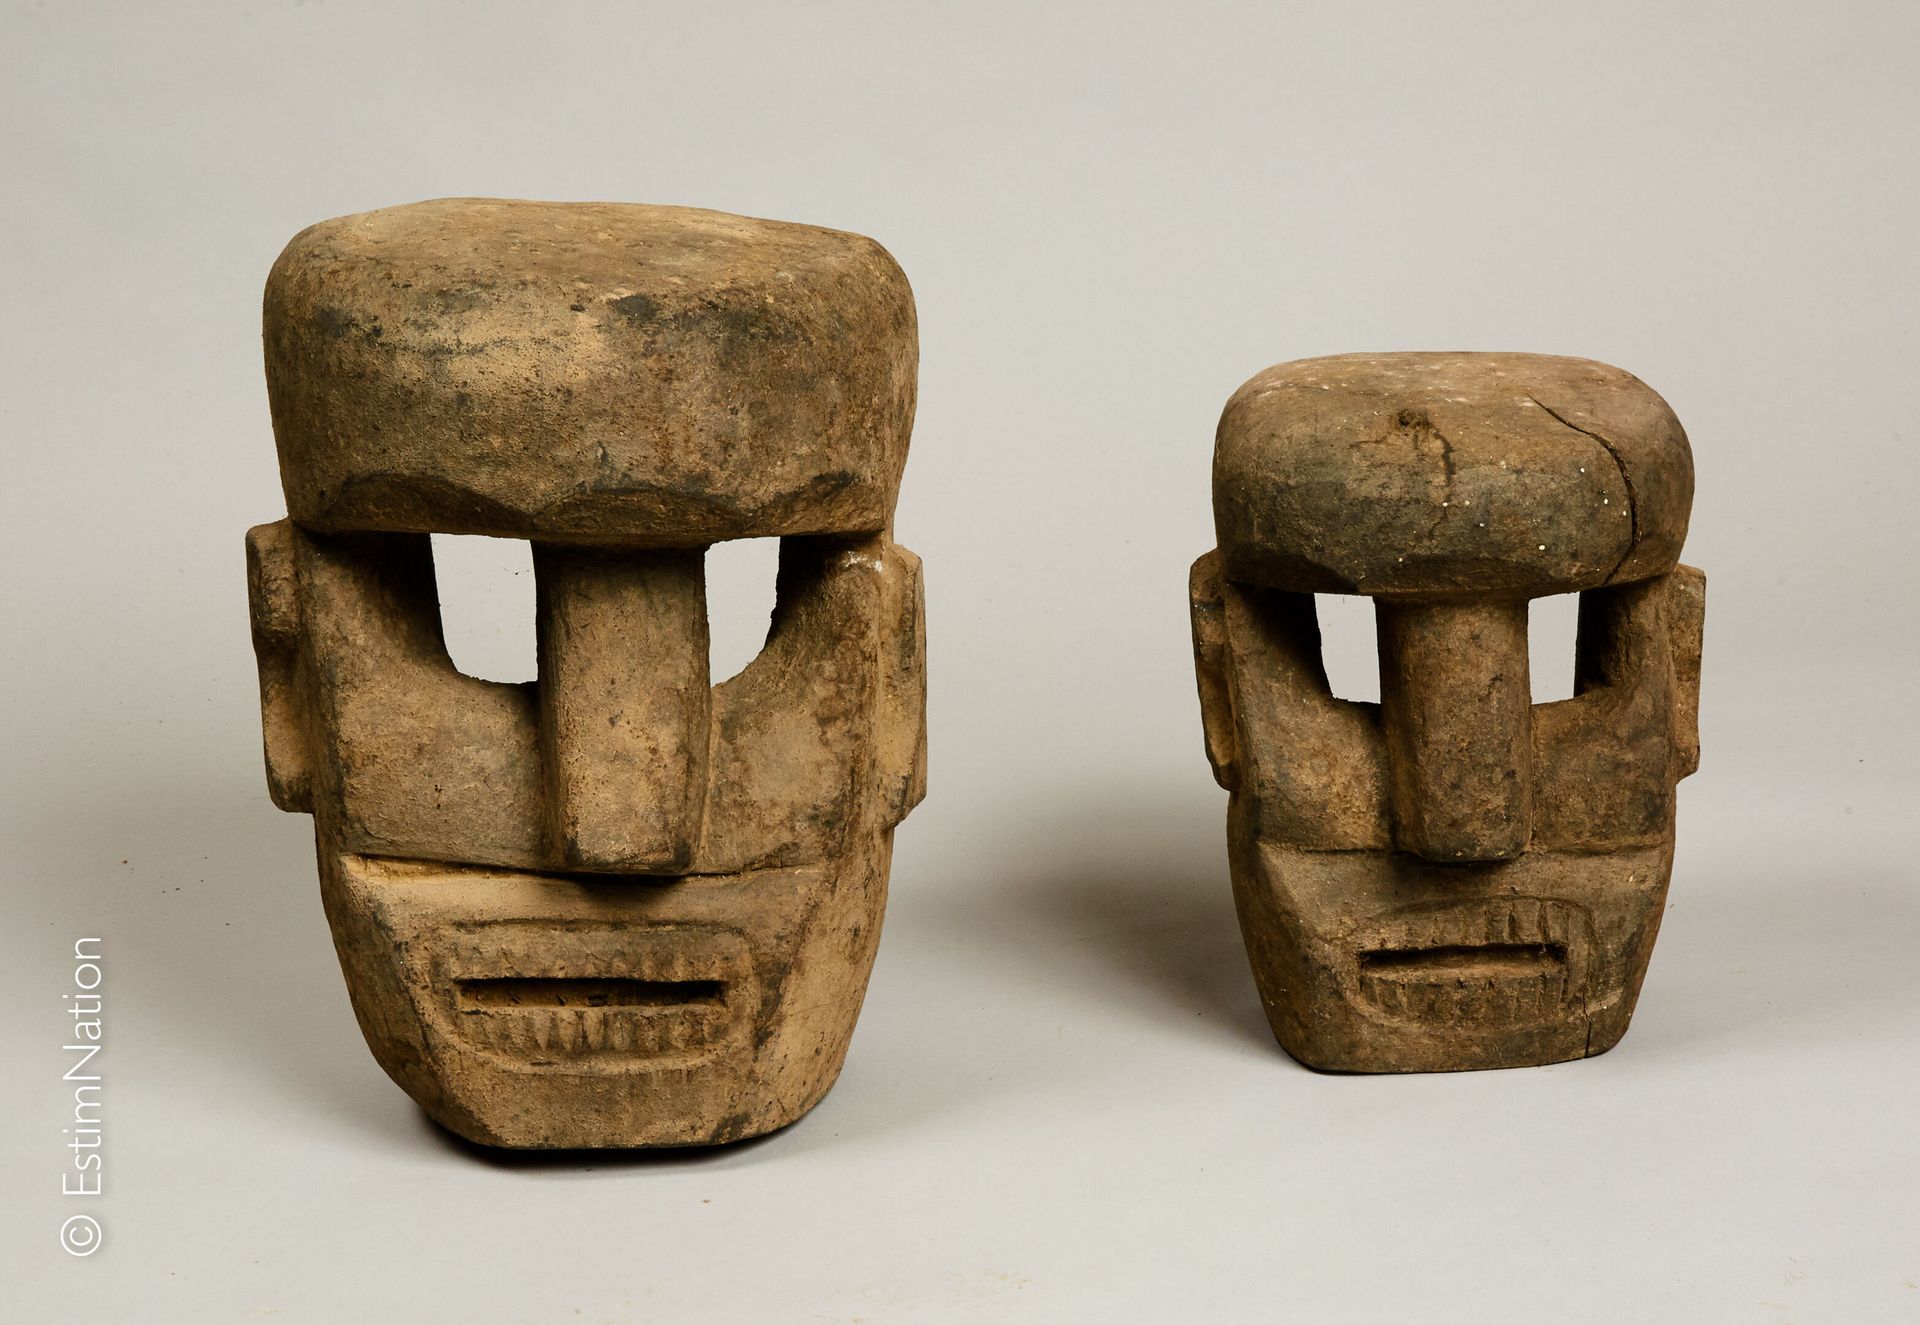 TIMOR TIMOR



Dos máscaras de madera tallada y pigmentos naturales que muestran&hellip;